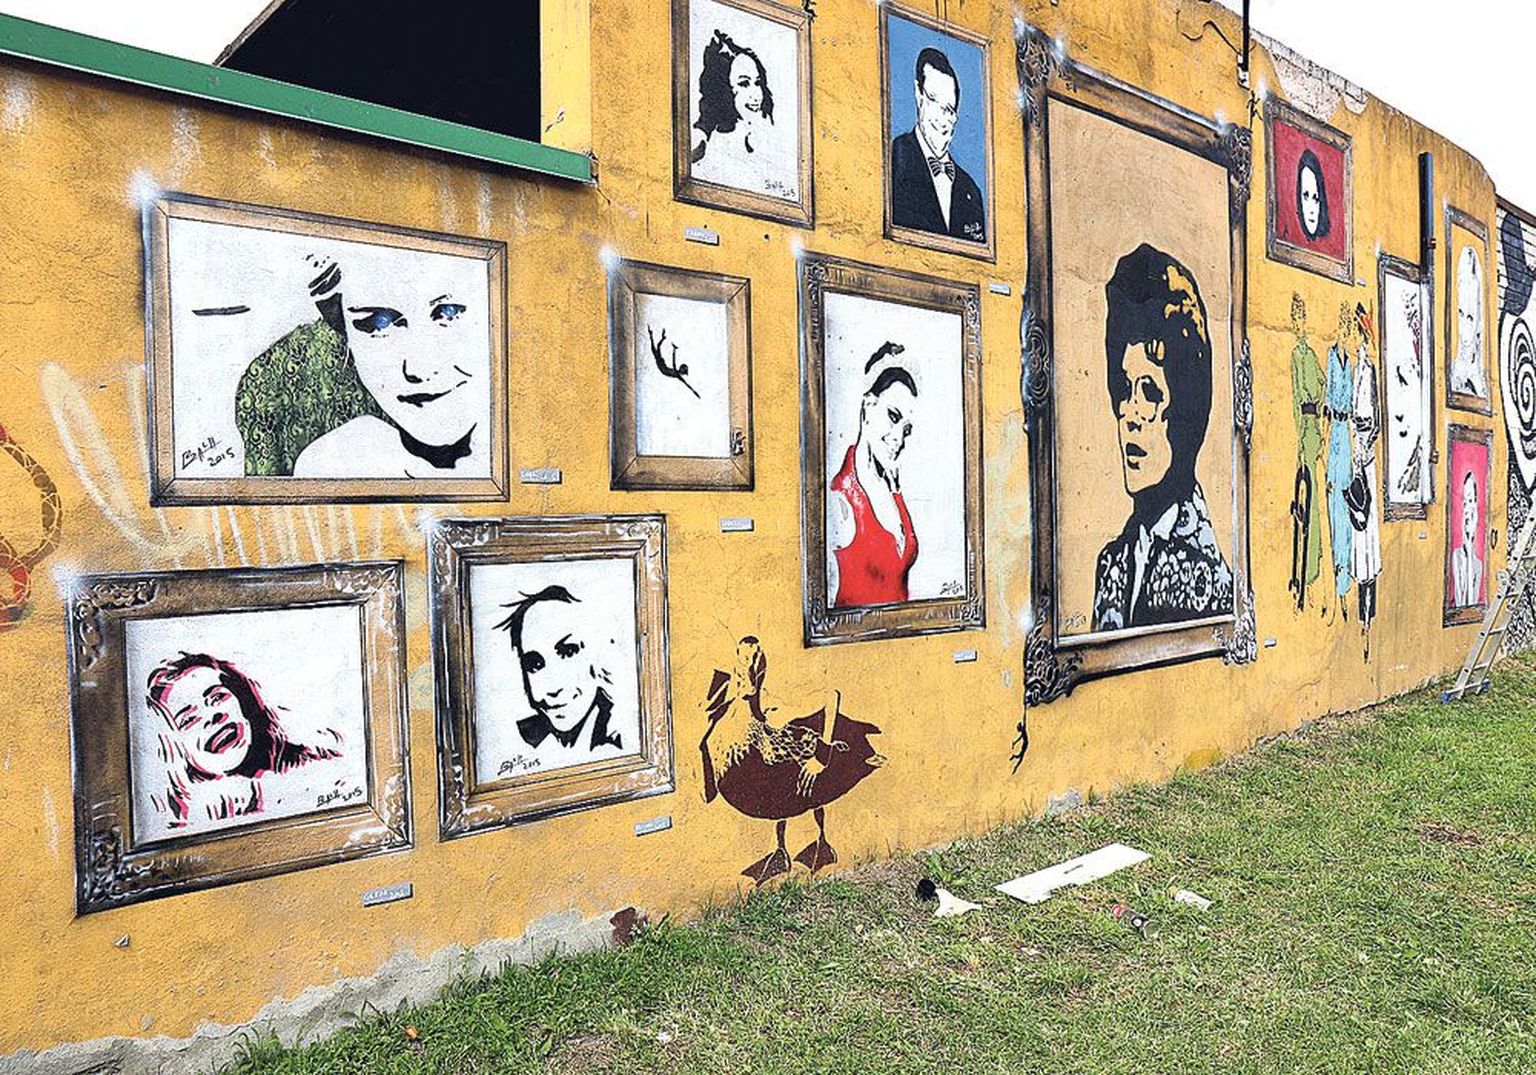 Võru ja Kastani tänava nurgal on kõrge müür, millele on kodumaiste ja rajataguste tänavakunstnike senise loomingu kõrvale tekkinud kolmeteistkümnest raamitud portreest koosnev näitus. Need näopildid on loonud grafitikunstiga juba 1990. aastate keskel alustanud tartlane Bach Babach.